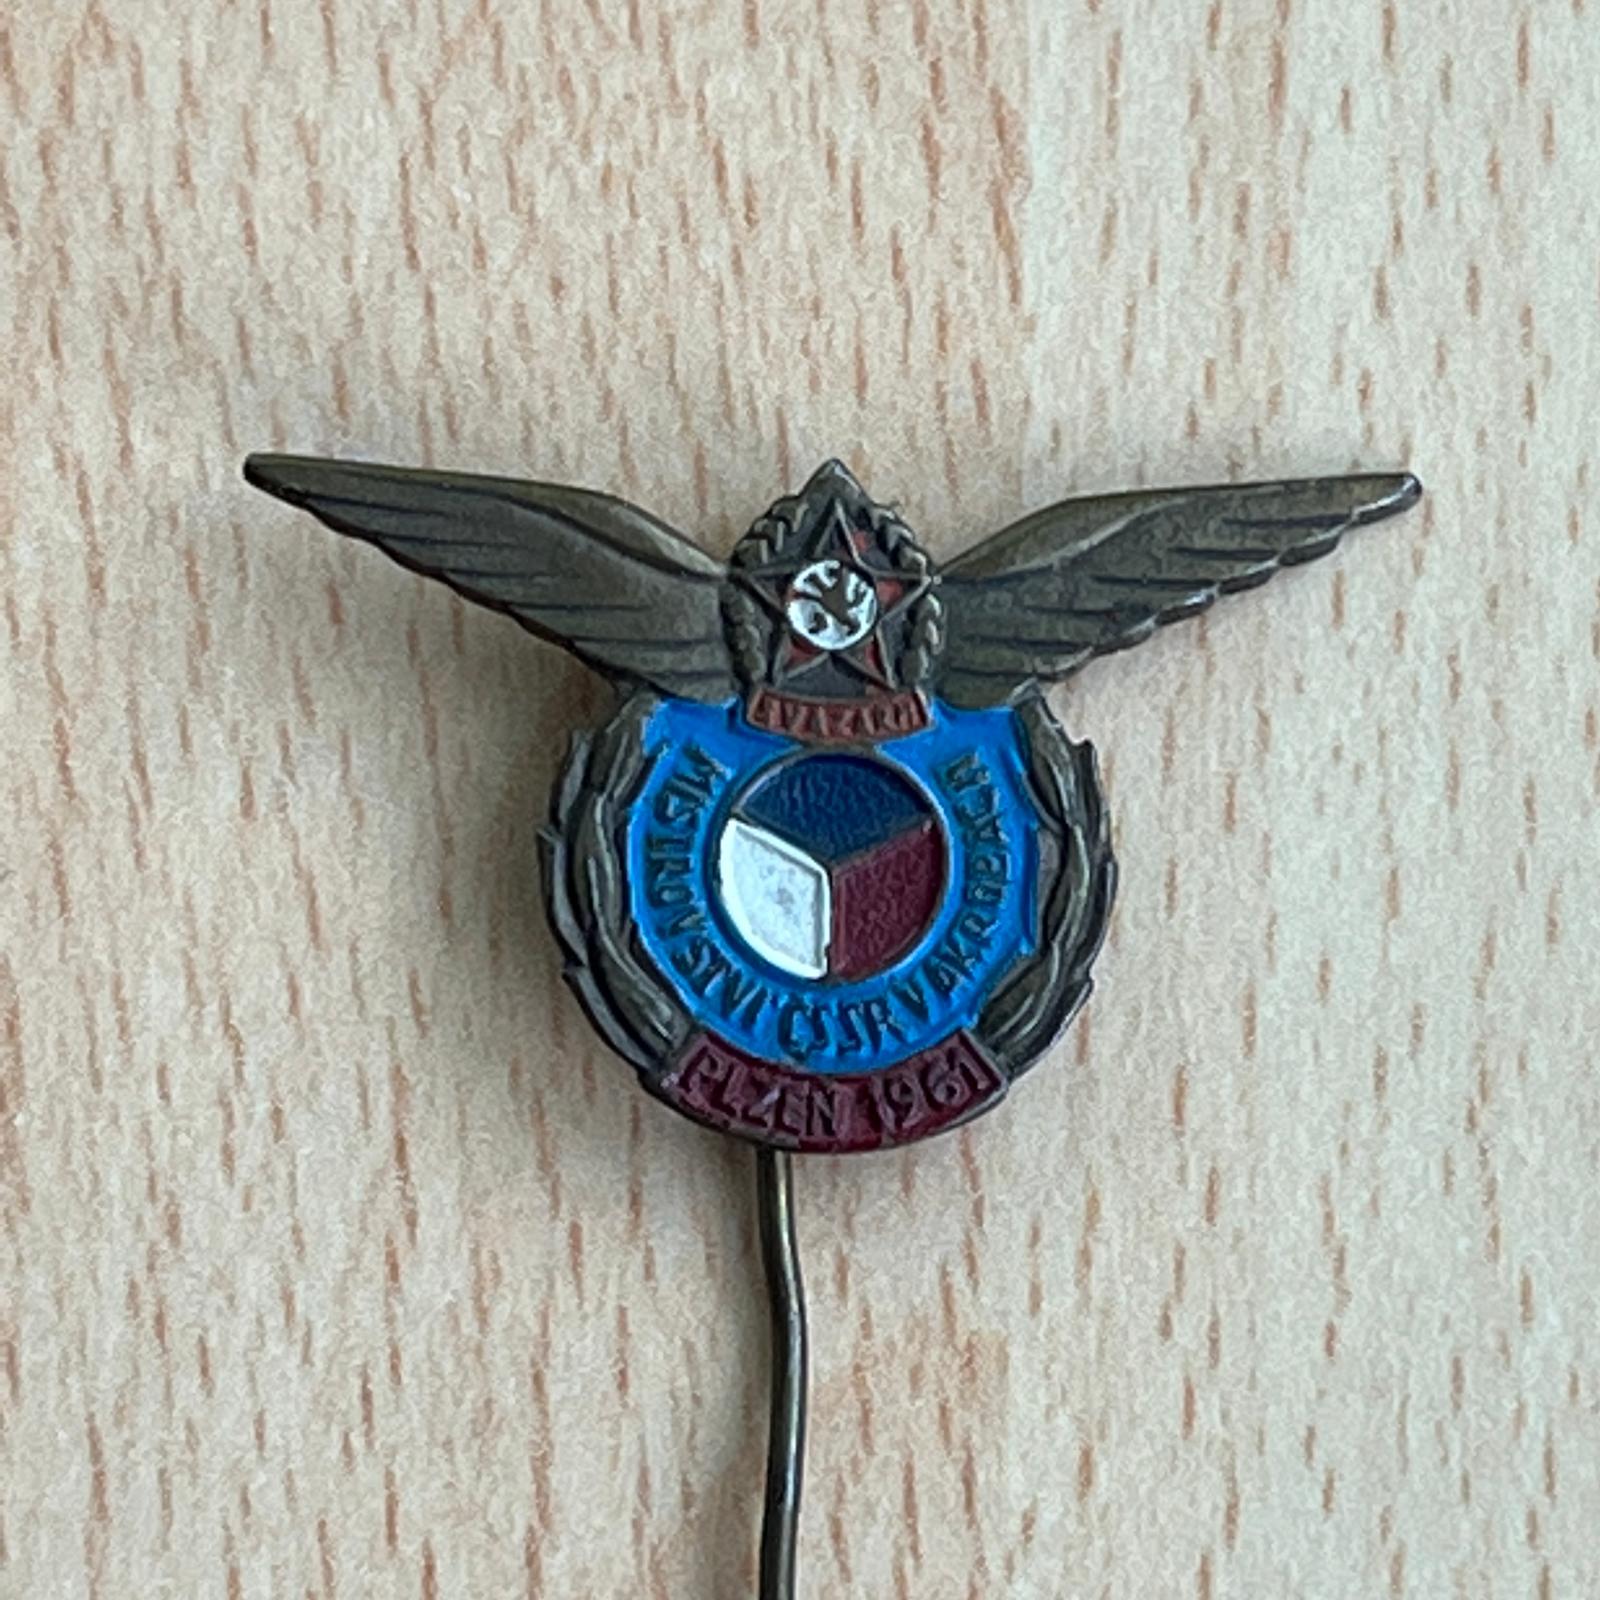 Letecký odznak Majstrostva ČSR Akrobacia 1961 - Odznaky, nášivky a medaily